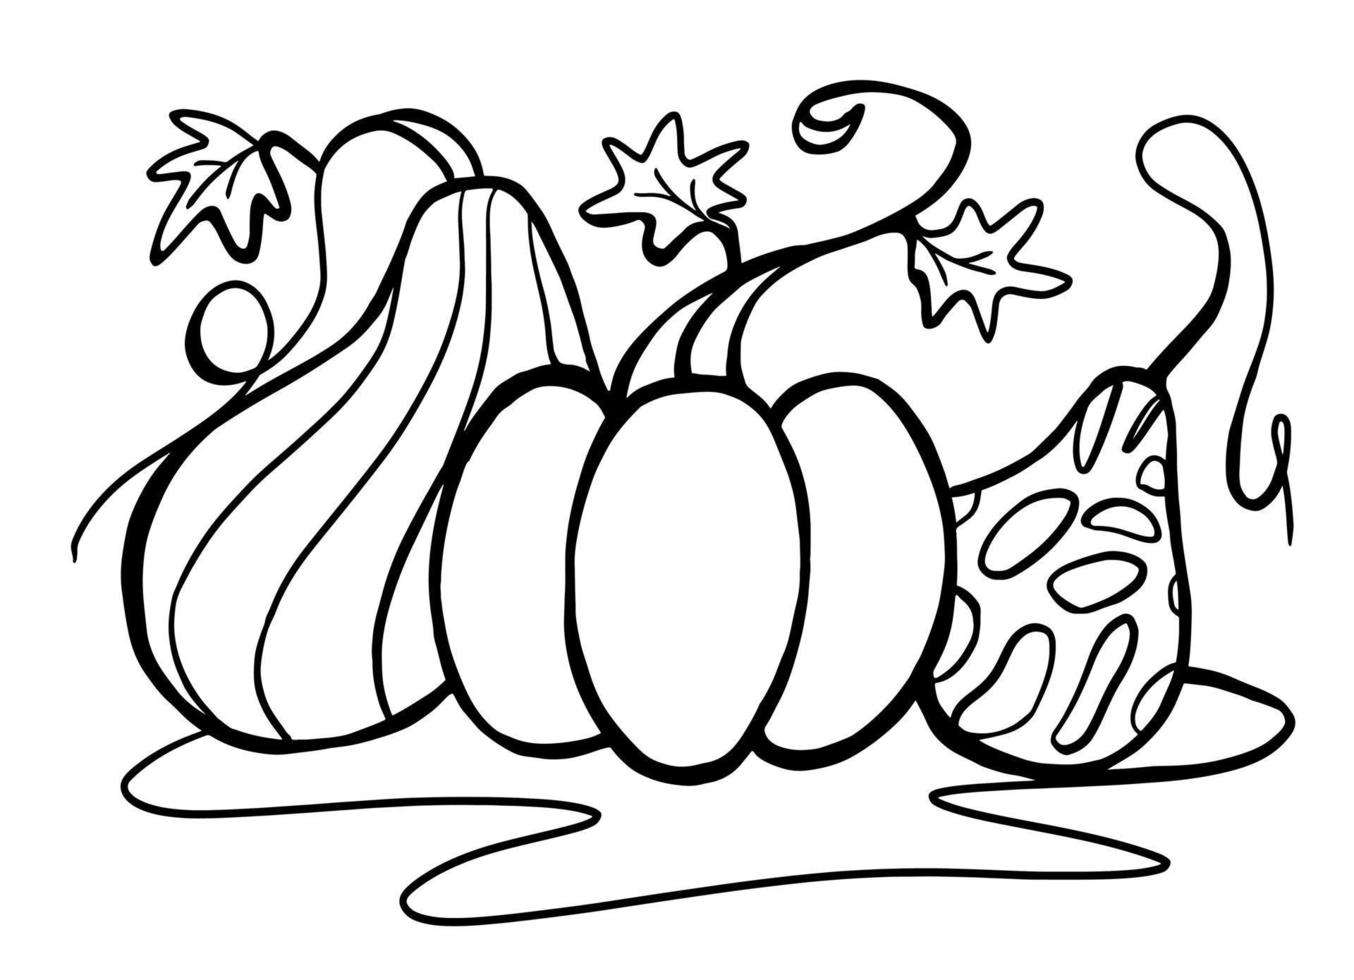 imagem de vetor gráfico preto e branco de três abóboras para colorir, logotipo, crachá, embalagem. abóboras de outono estilizadas para ação de graças, halloween, feriados de colheita. rabiscando à mão